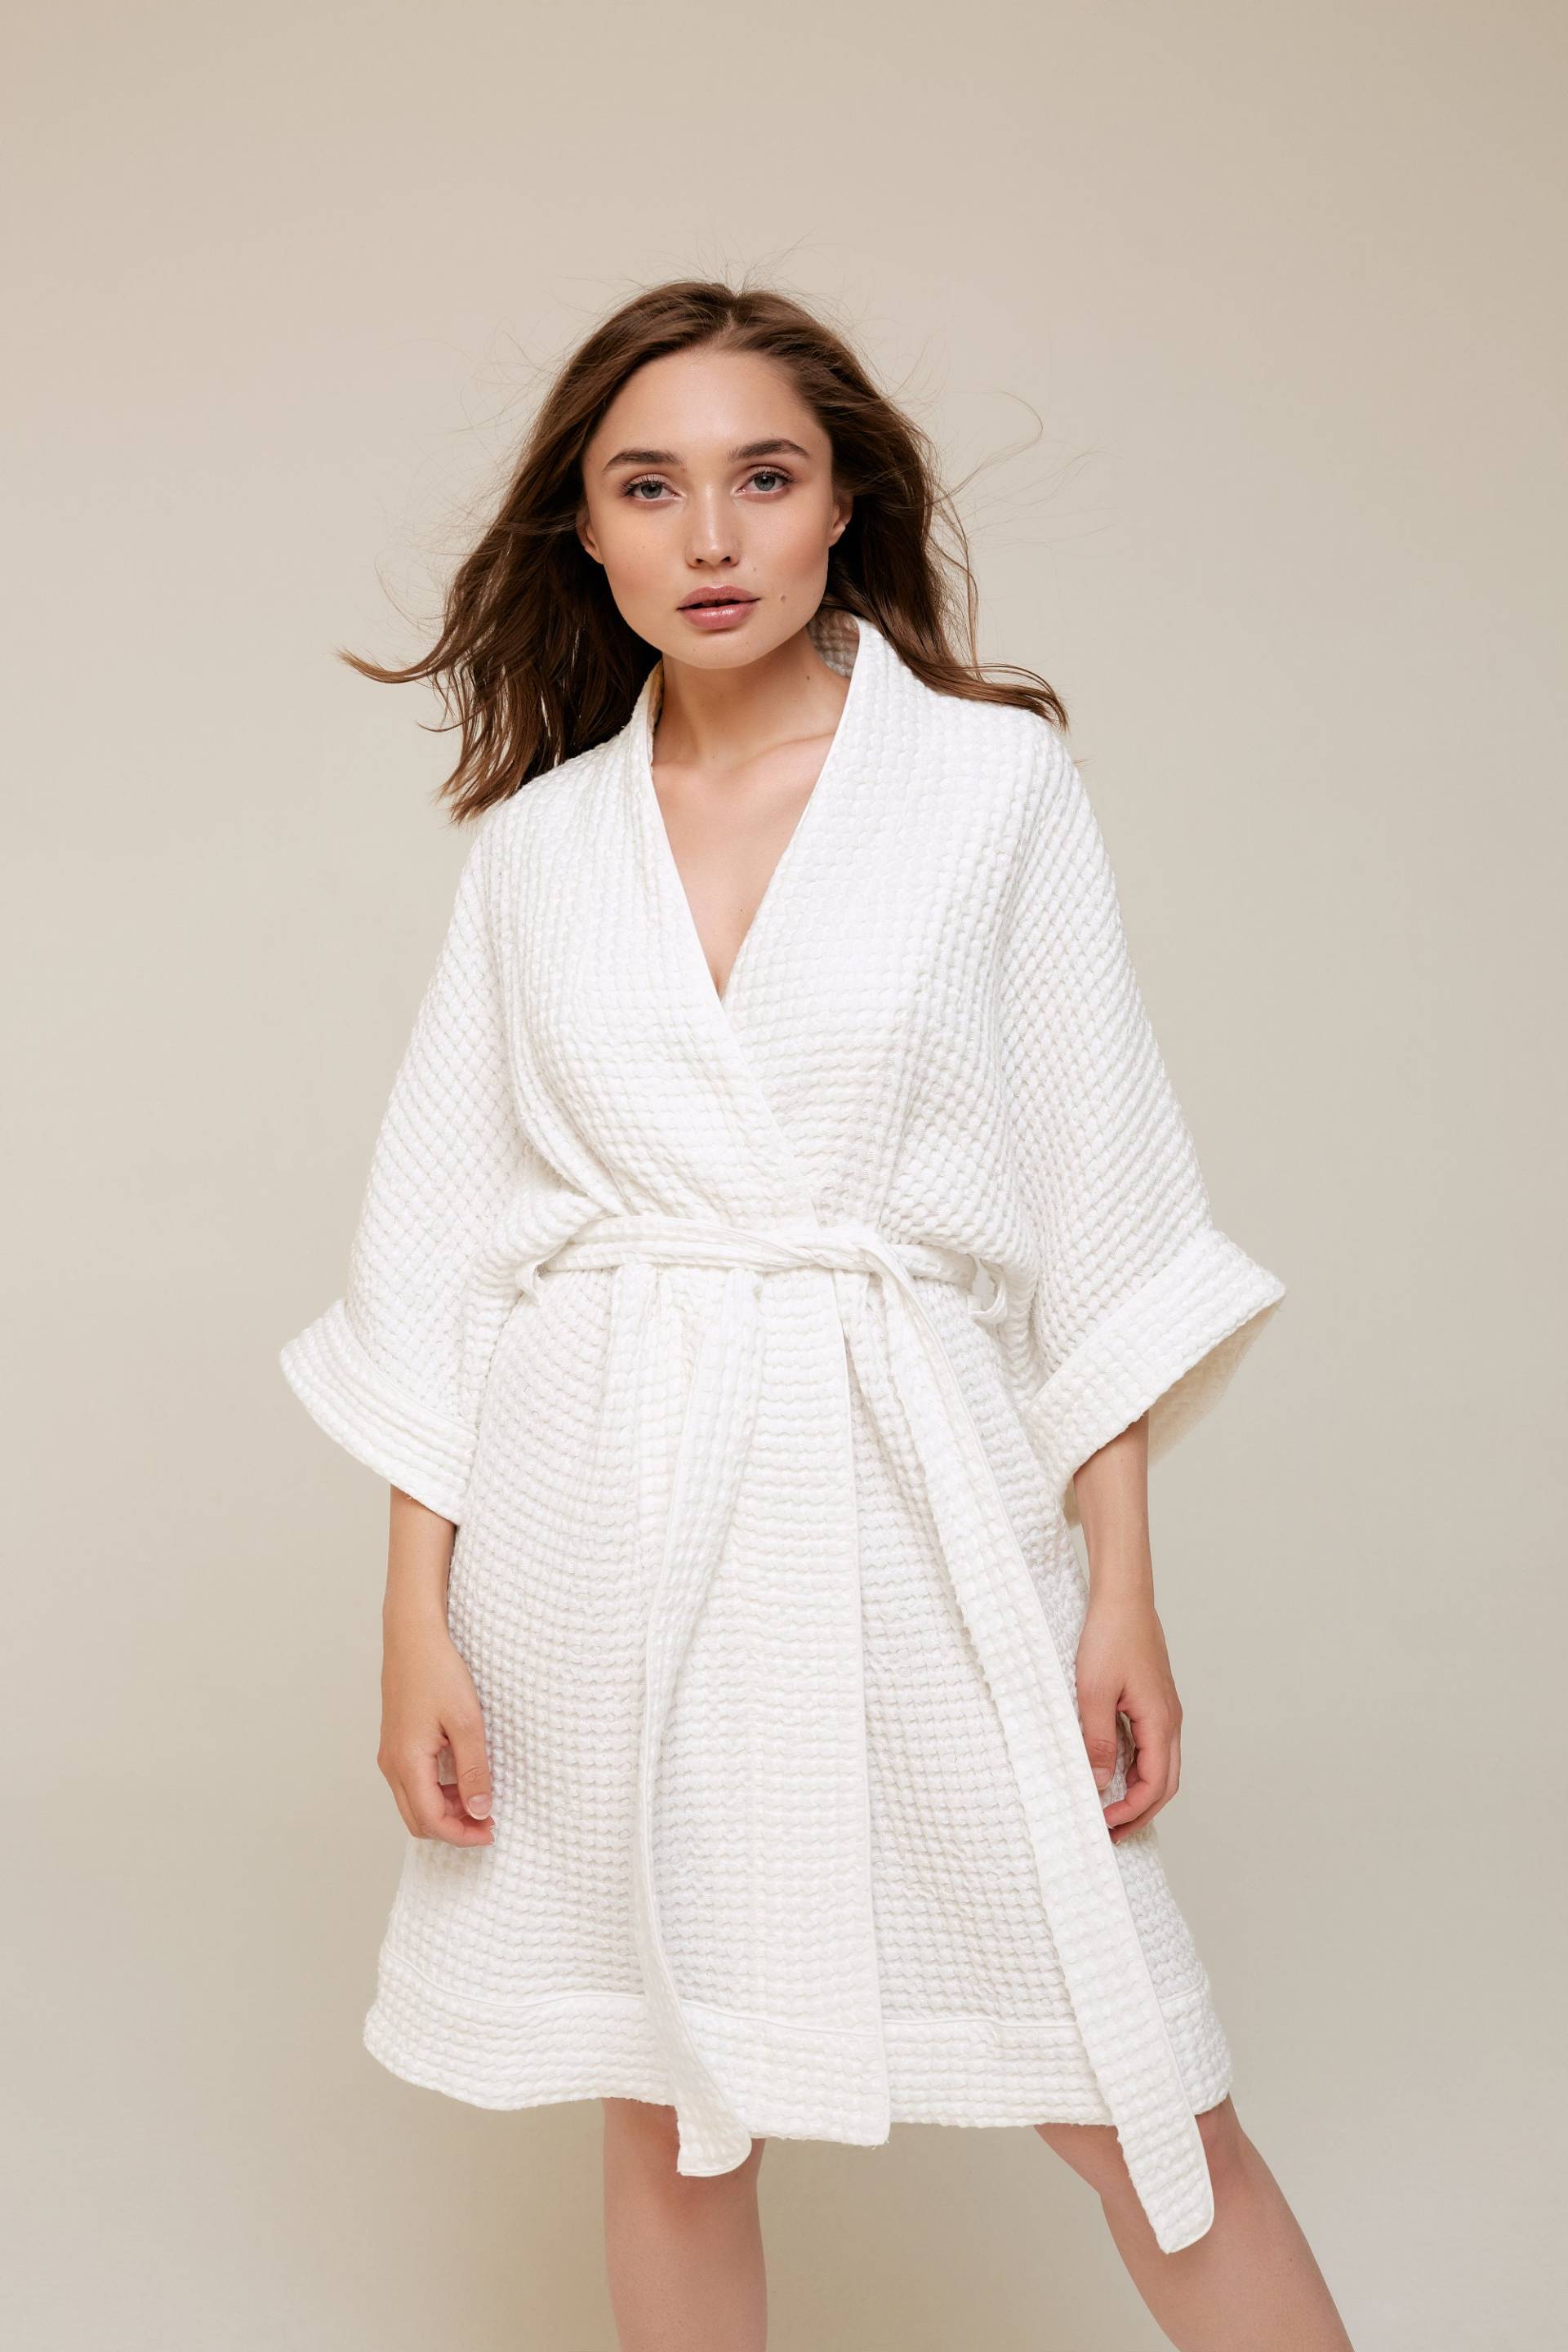 Damen 100% Premium Bio-Waffel-Baumwolle Leinen Bademantel Kimono Cremeweiß, Weich, Hautfreundlich, Handgefertigtes Geschenk Für Sie von Mellmony